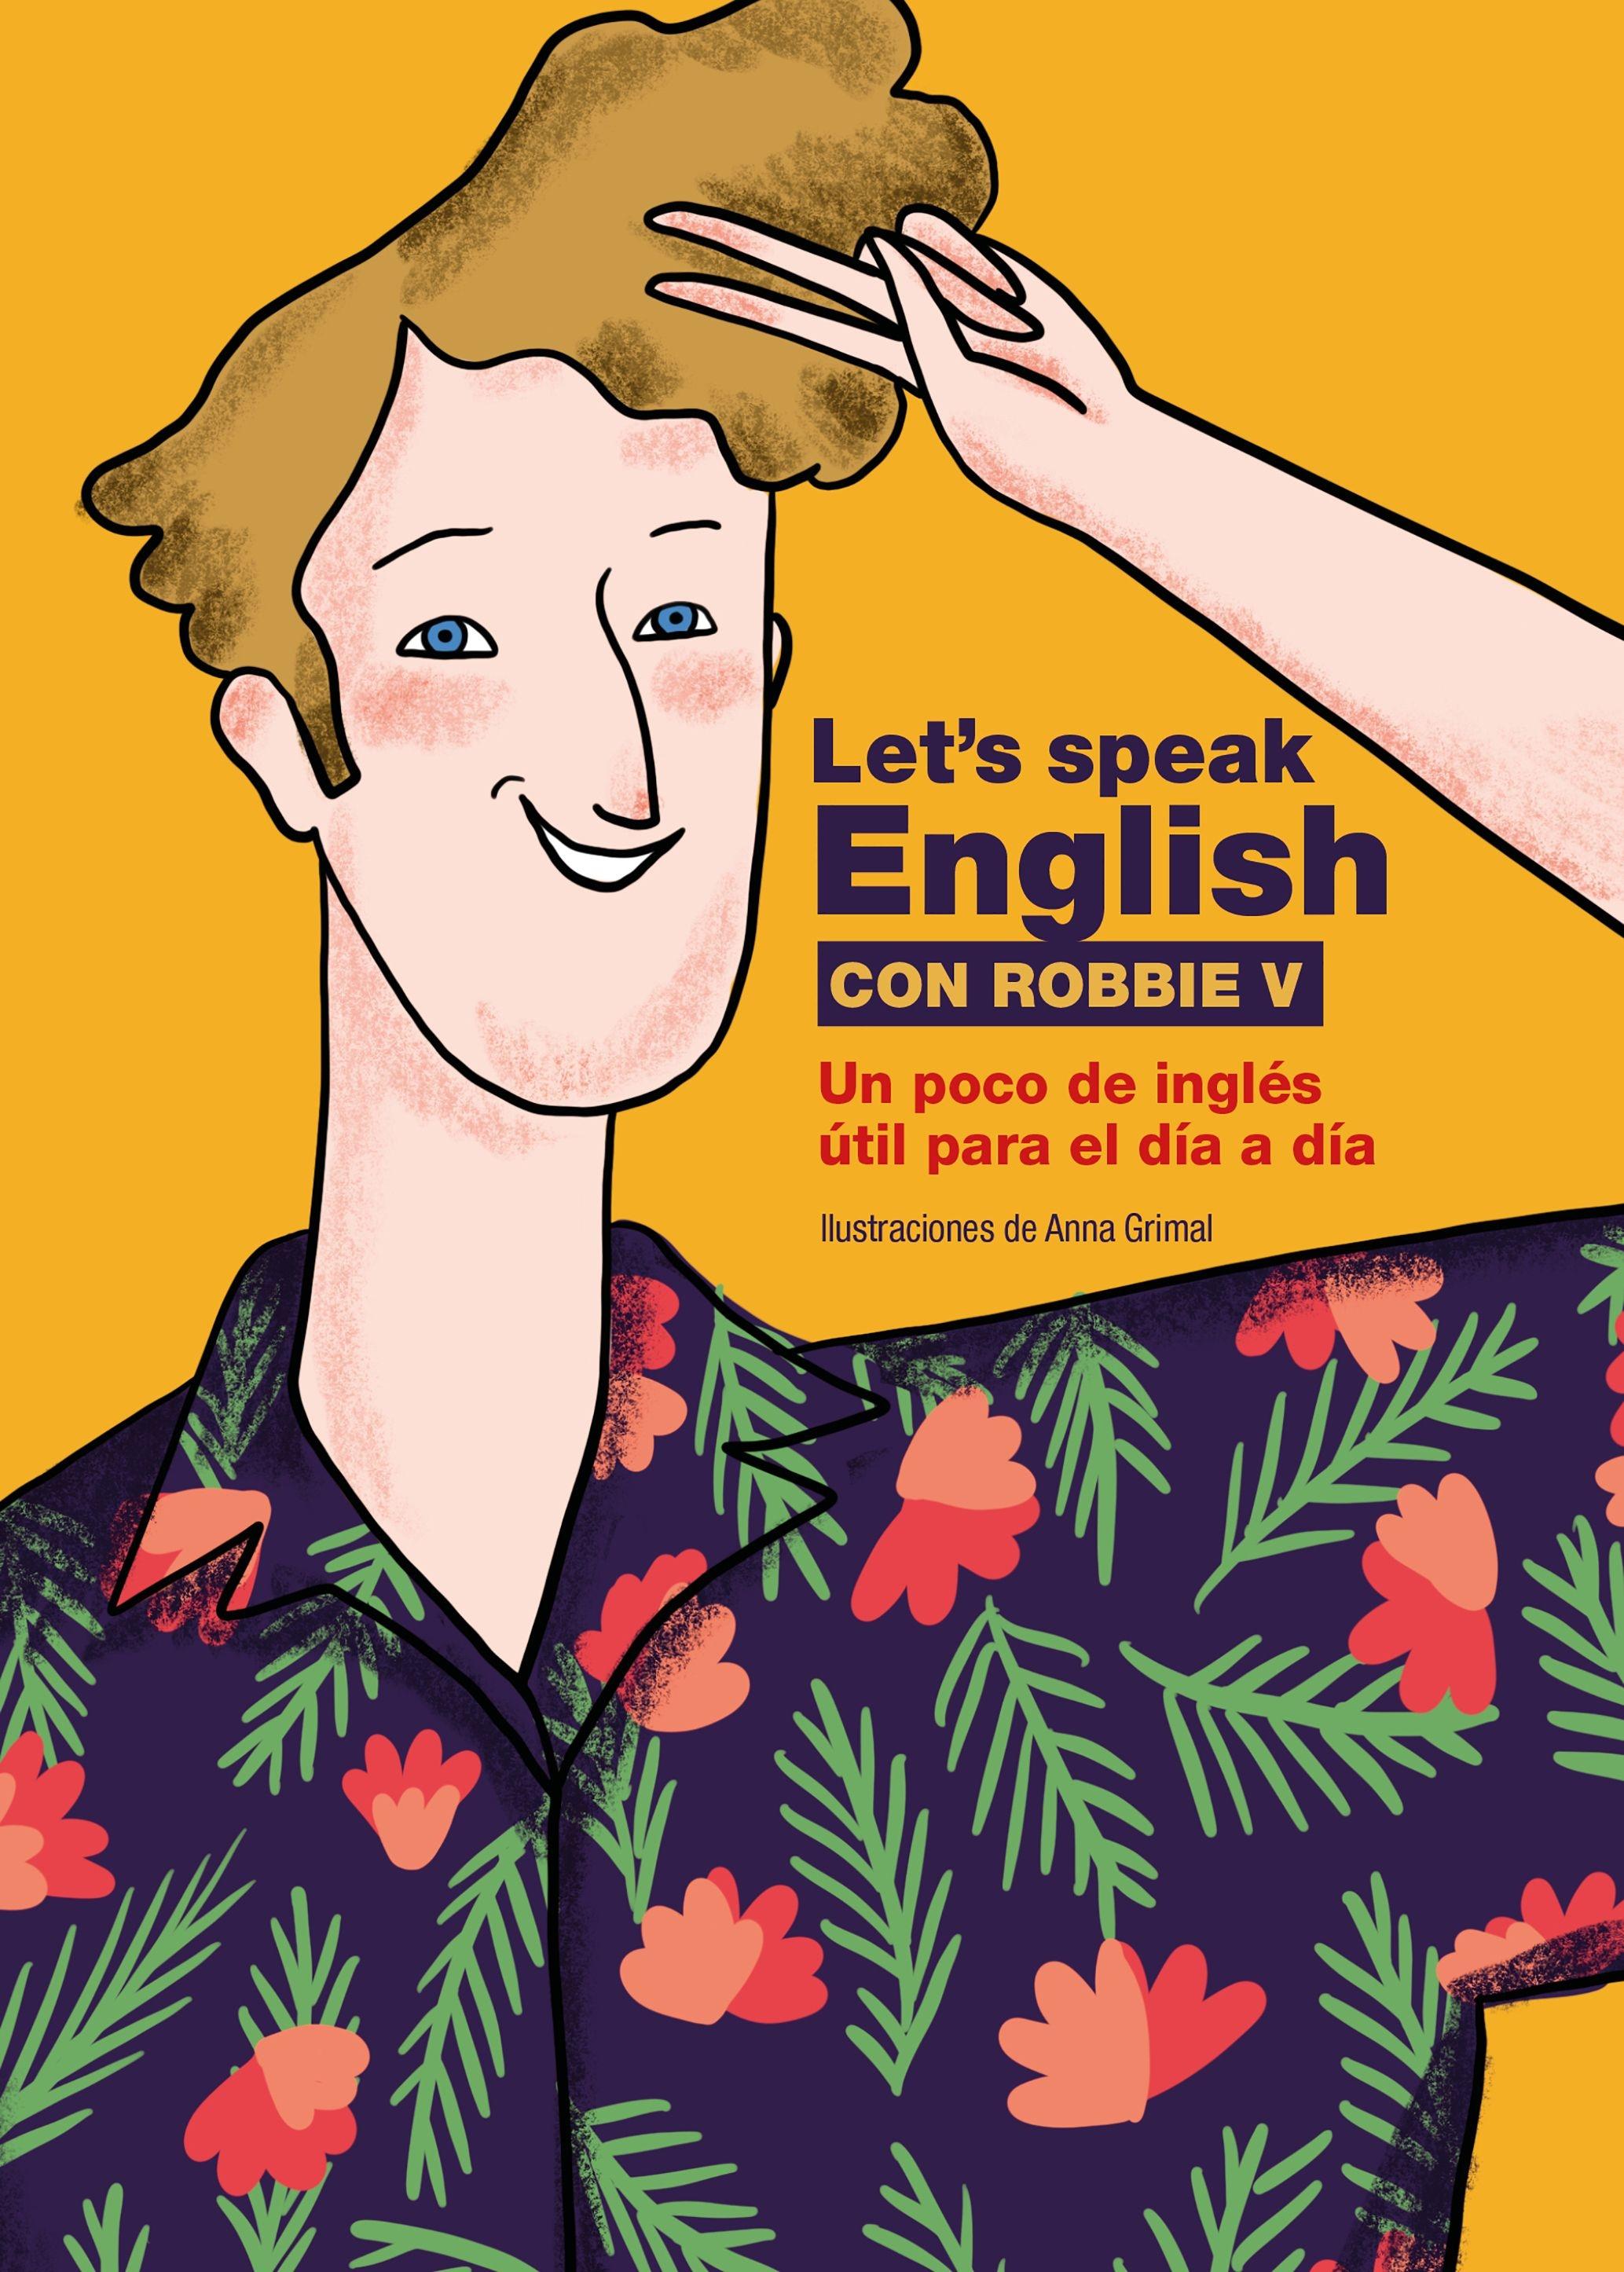 Let's speak English con Robbie V "Un poco de inglés útil para el día a día"